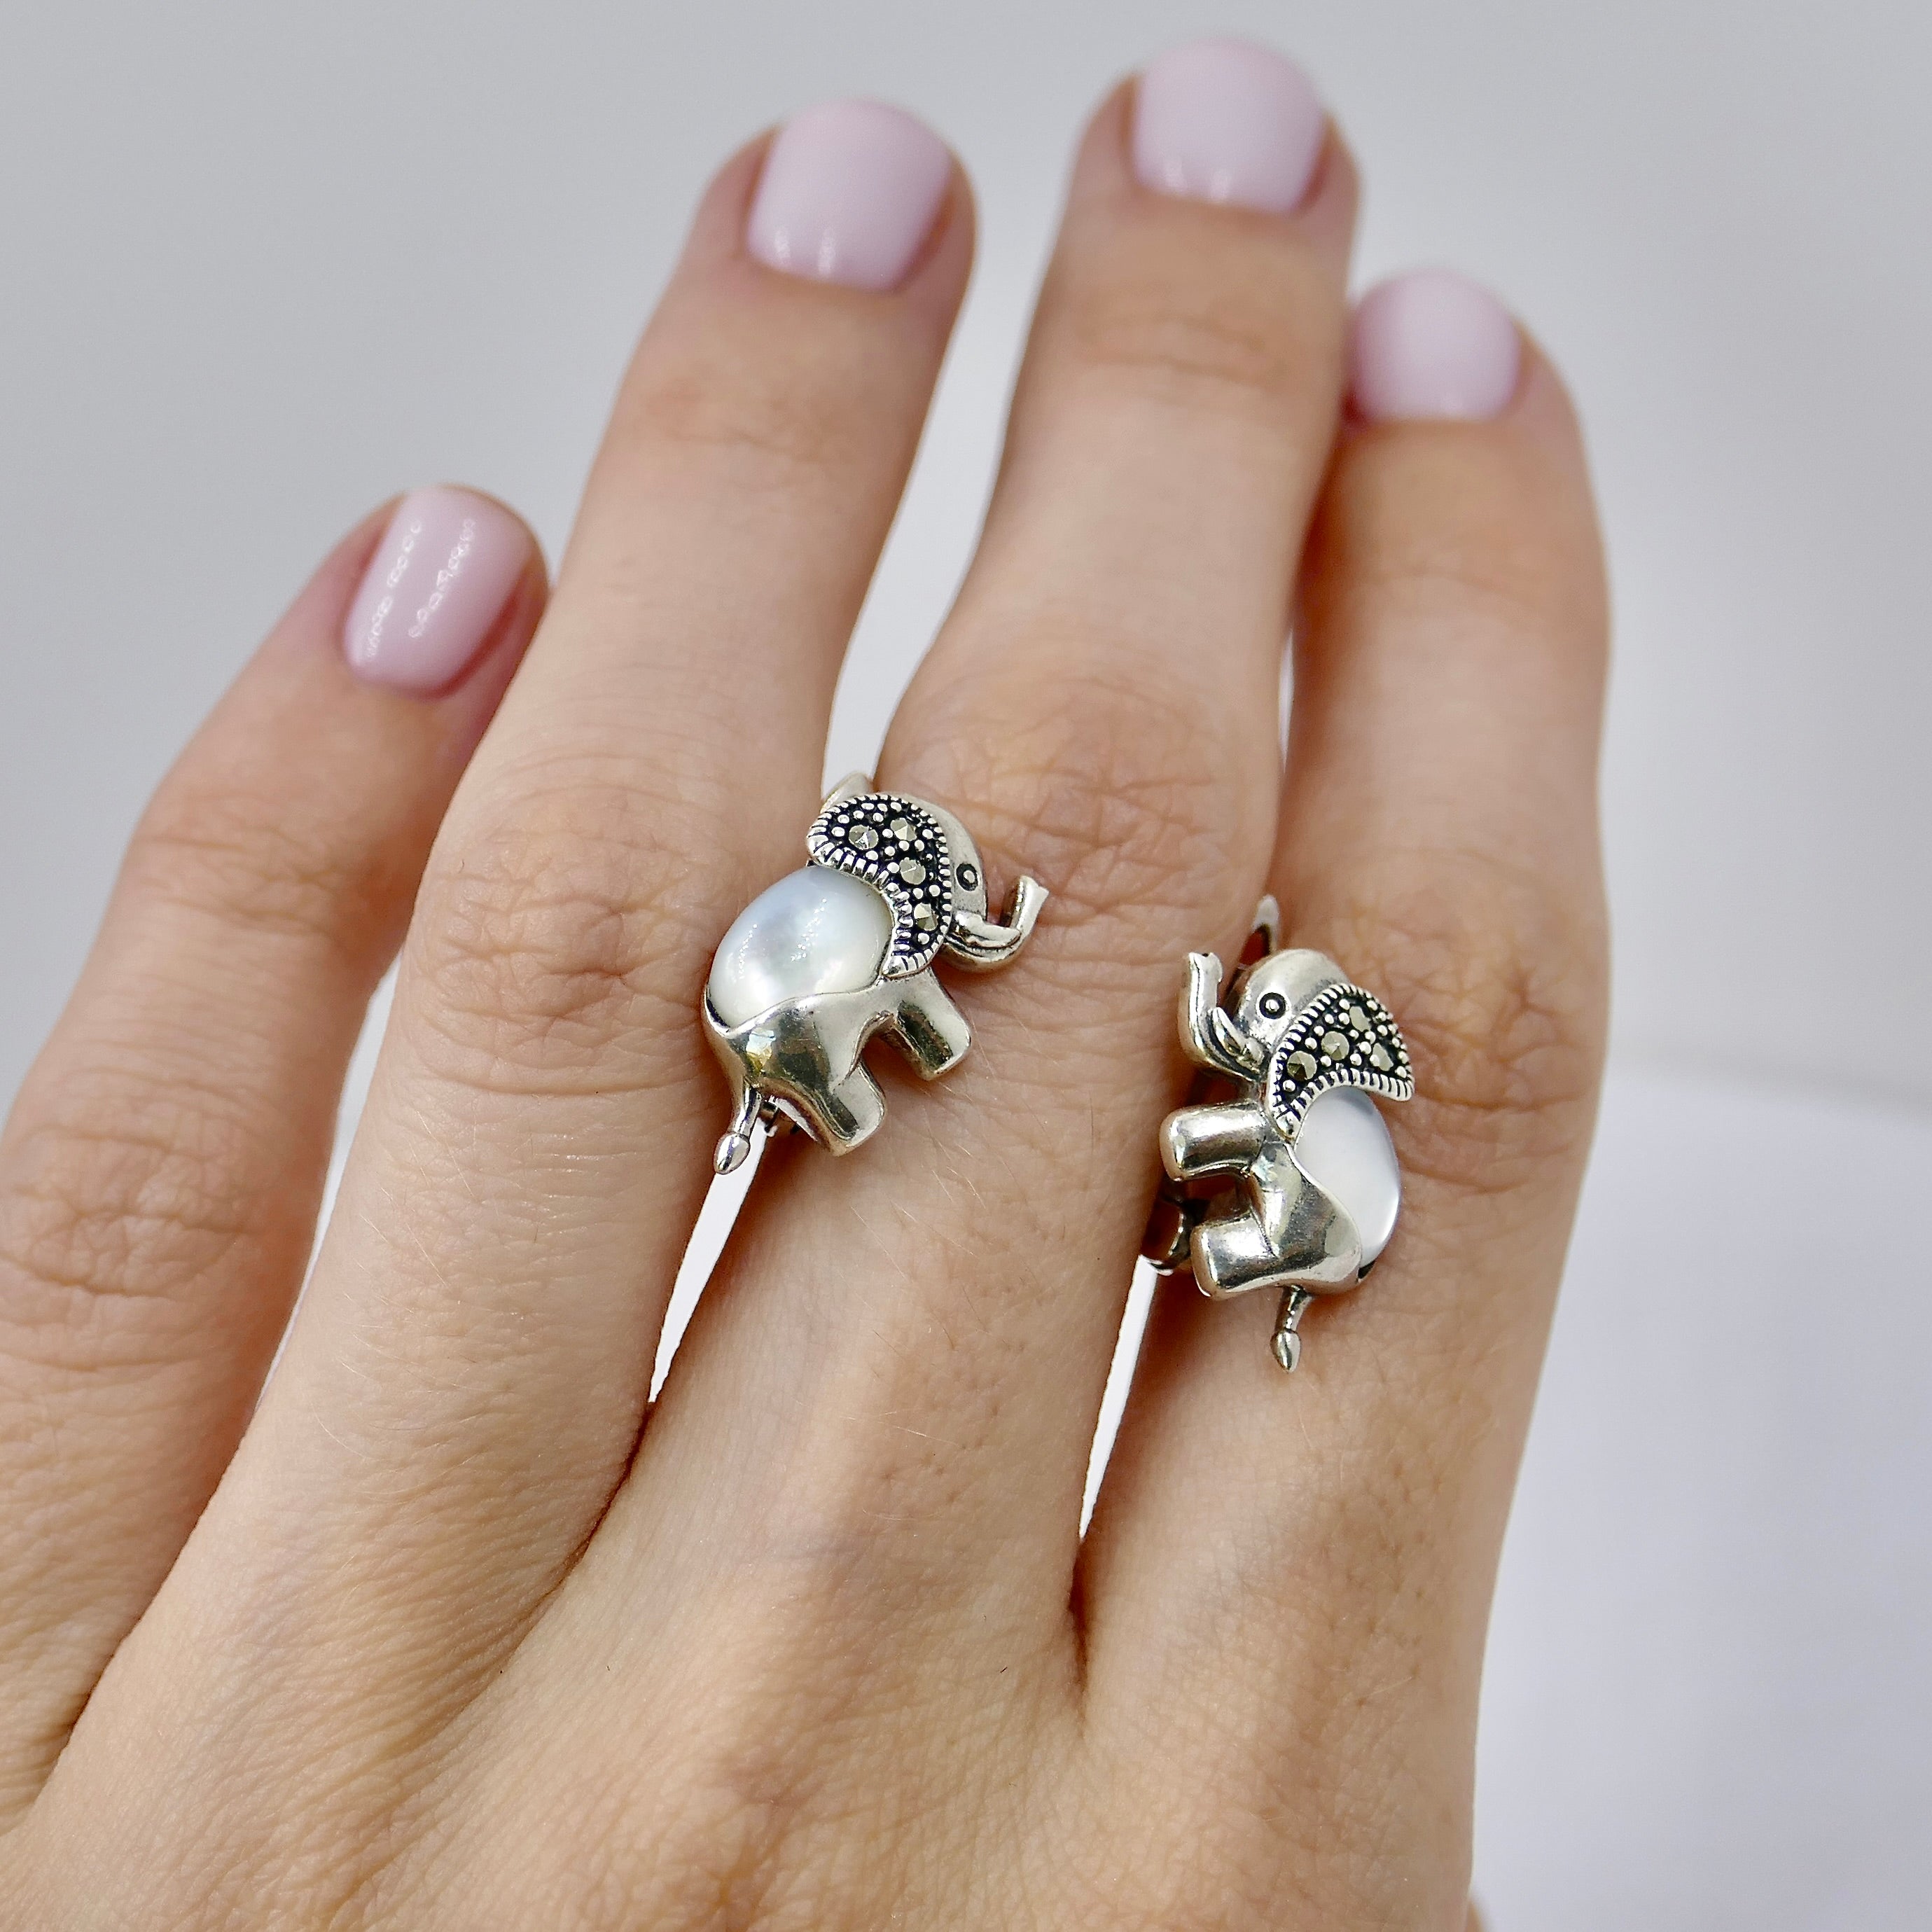 Elephant earrings moonstone | Серьги слоны с лунным камнем